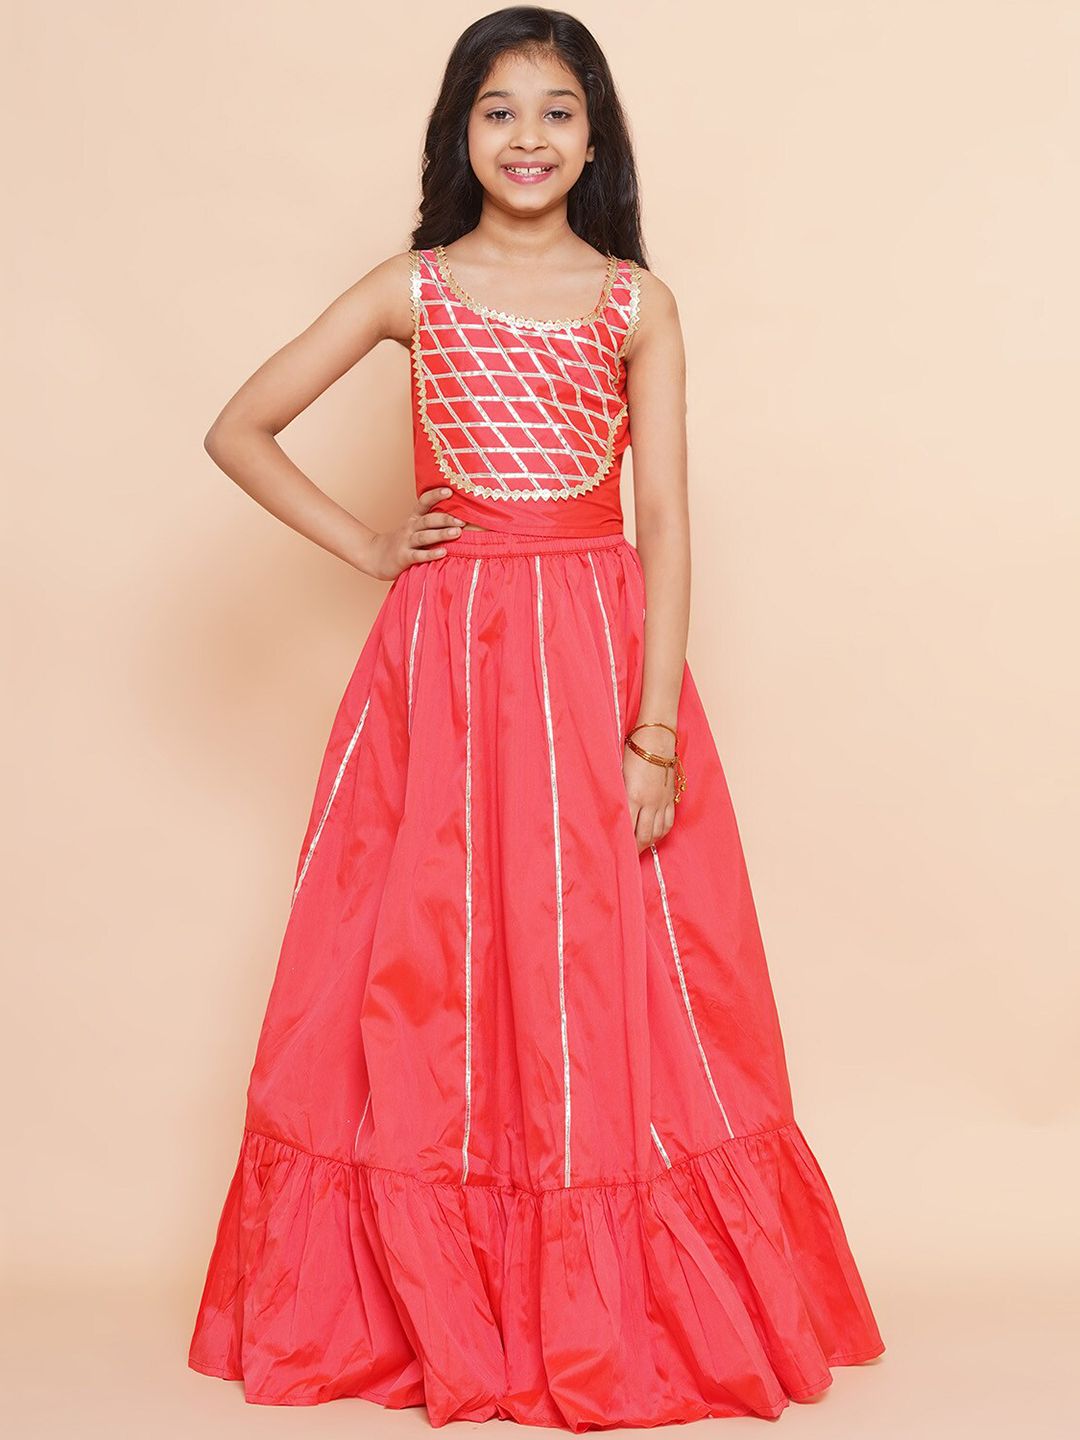 Modish Couture Girls Orange & Gold-Toned Embellished Ready to Wear Lehenga & Price in India